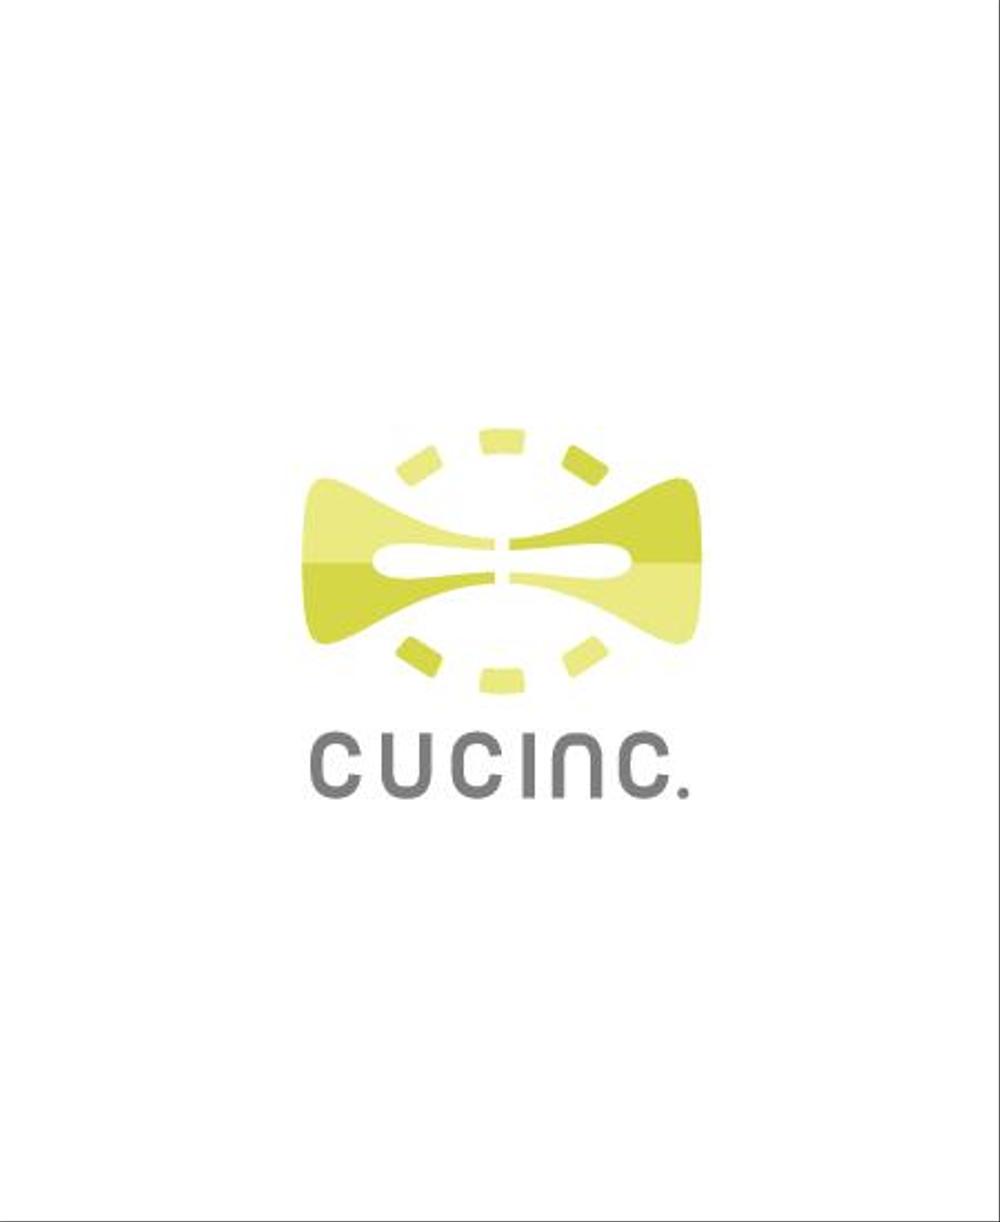 個人と企業を結ぶWEBサービスを提供する会社「CUC Inc.」のロゴデザイン作成依頼